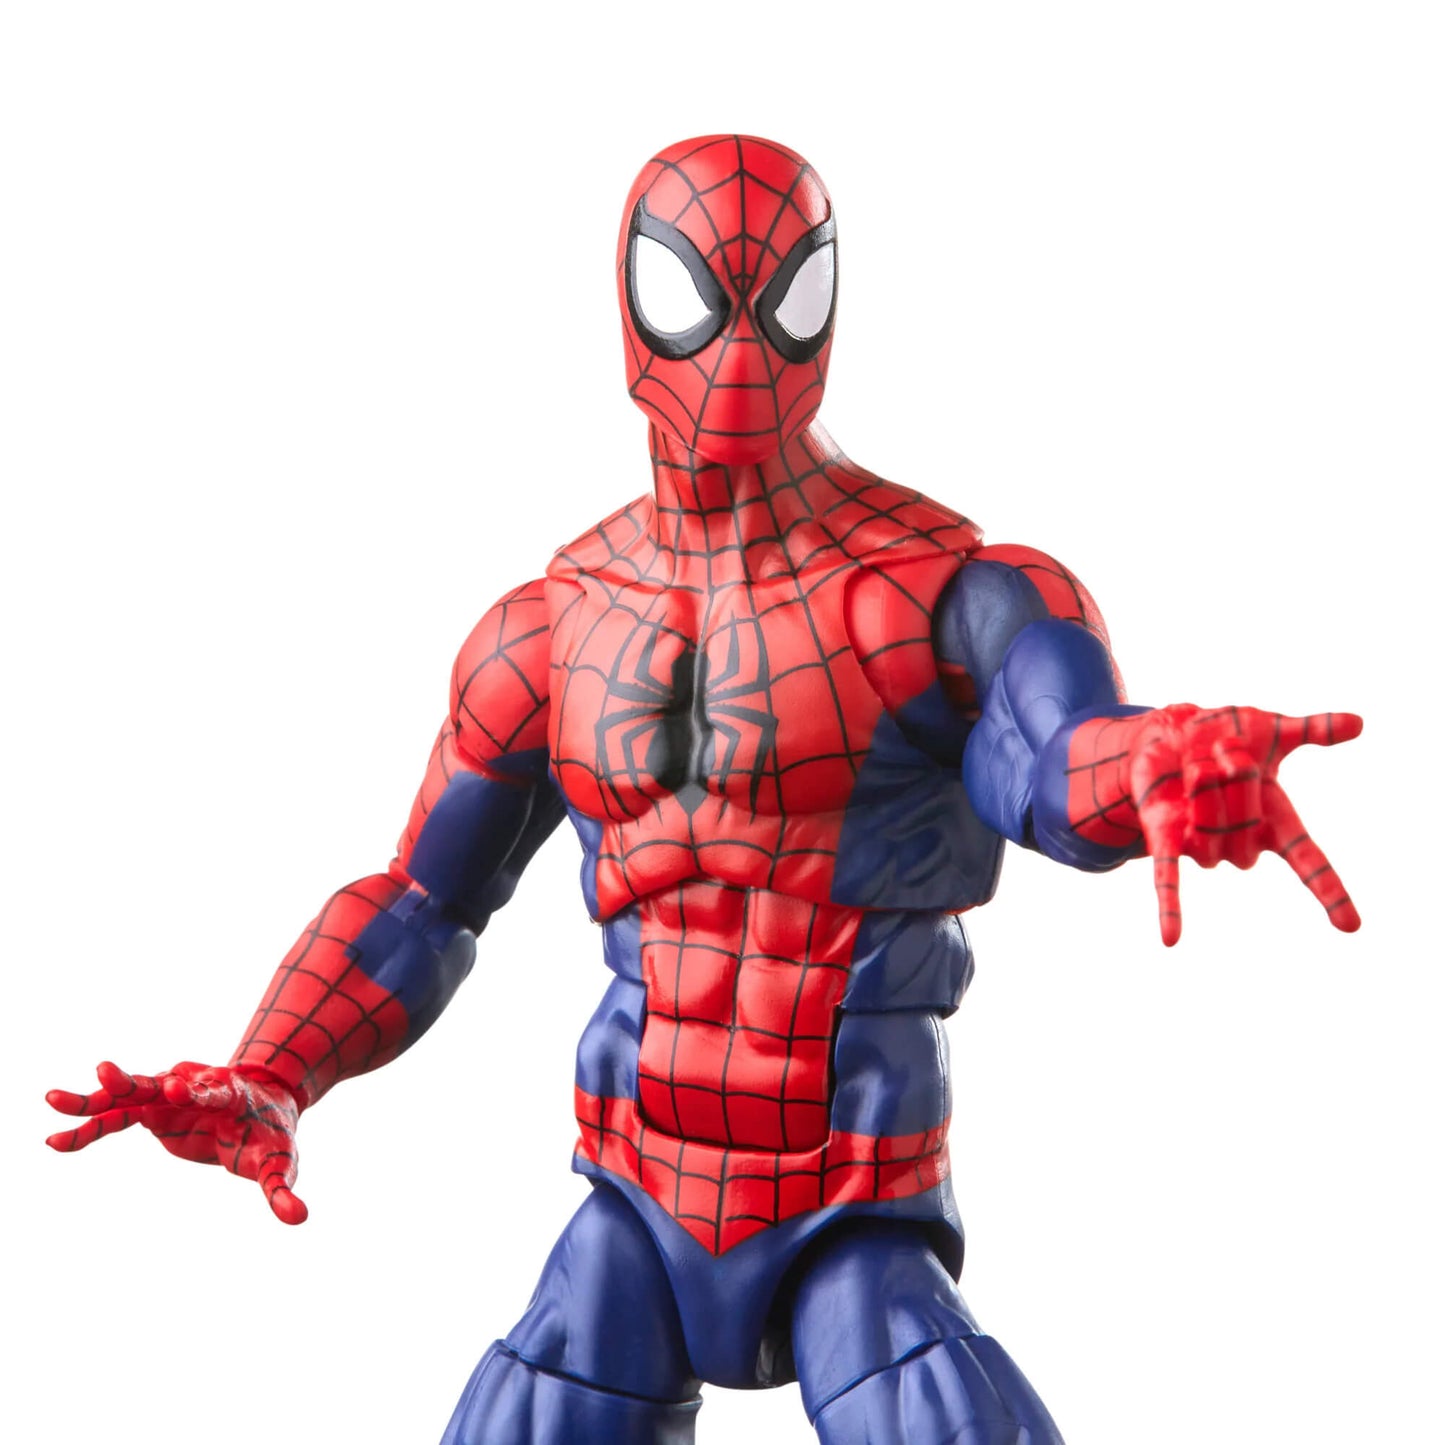 Marvel Legends Marvel’s Spiderman peter parker masked action figure